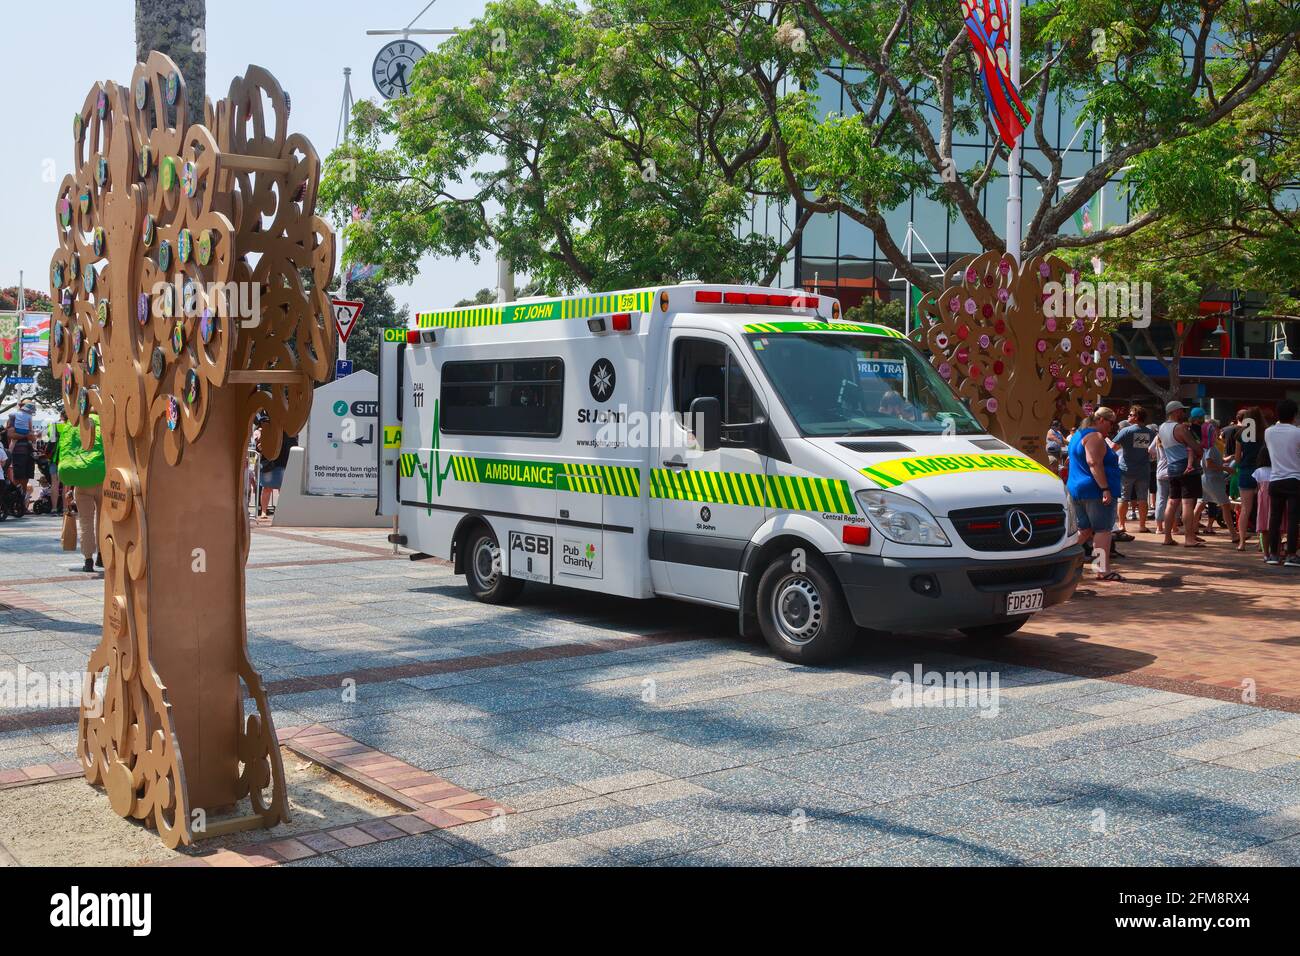 Une ambulance appartenant à St John Nouvelle-Zélande debout dans le centre-ville de Tauranga, en Nouvelle-Zélande, pendant un défilé de Noël Banque D'Images